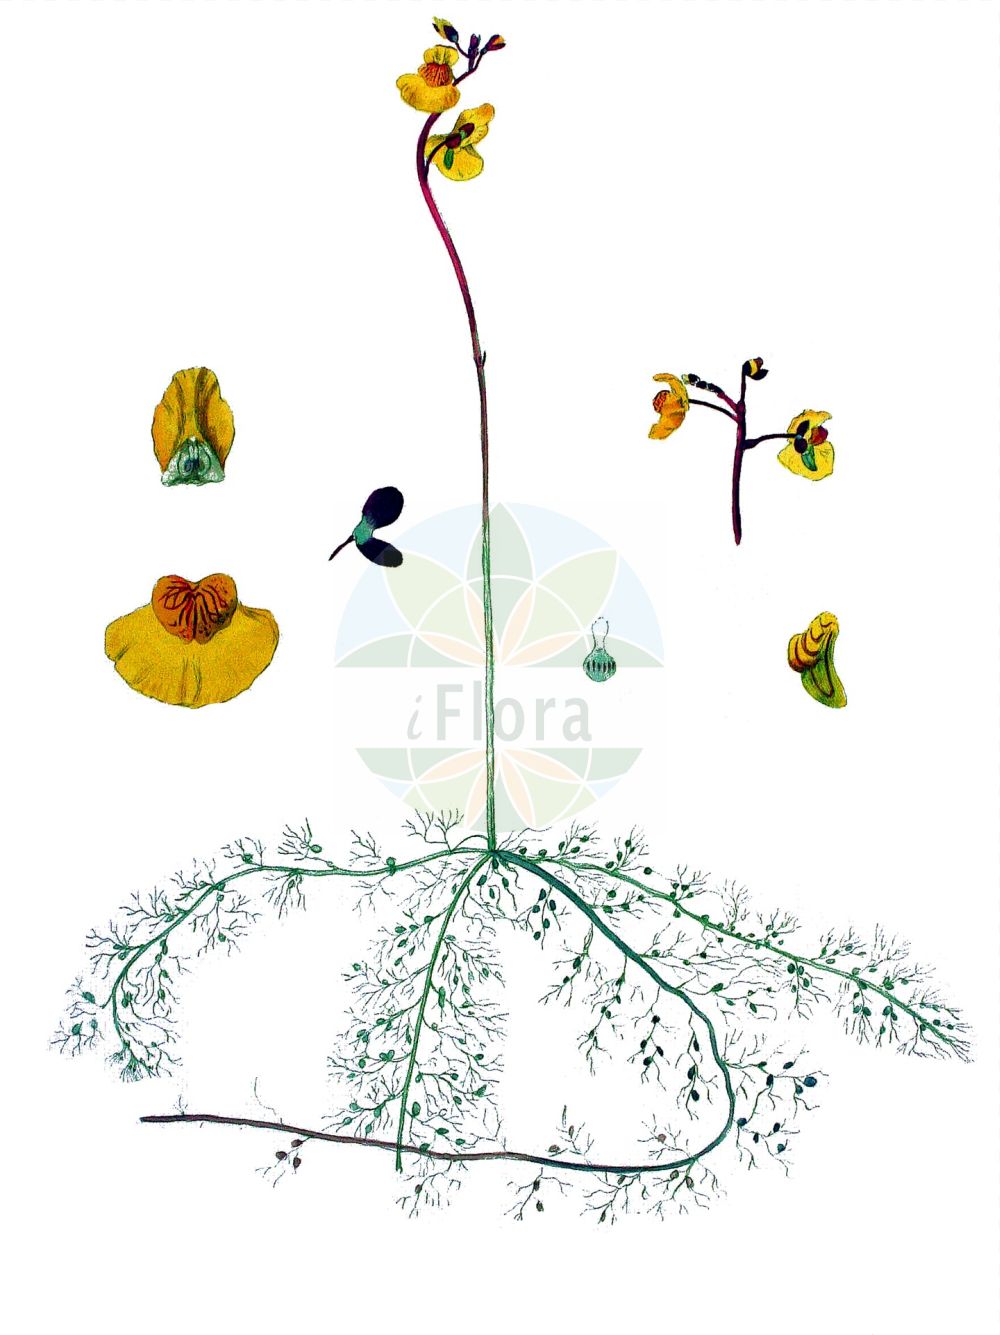 Historische Abbildung von Utricularia australis (Verkannter Wasserschlauch - Bladderwort). Das Bild zeigt Blatt, Bluete, Frucht und Same. ---- Historical Drawing of Utricularia australis (Verkannter Wasserschlauch - Bladderwort). The image is showing leaf, flower, fruit and seed.(Utricularia australis,Verkannter Wasserschlauch,Bladderwort,Utricularia australis,Utricularia dubia,Utricularia jankae,Utricularia neglecta,Verkannter Wasserschlauch,Suedlicher Wasserschlauch,Übersehener Wasserschlauch,Bladderwort,Western Bladderwort,Utricularia,Wasserschlauch,Bladderwort,Lentibulariaceae,Wasserschlauchgewächse,Bladderwort family,Blatt,Bluete,Frucht,Same,leaf,flower,fruit,seed,Kops (1800-1934))